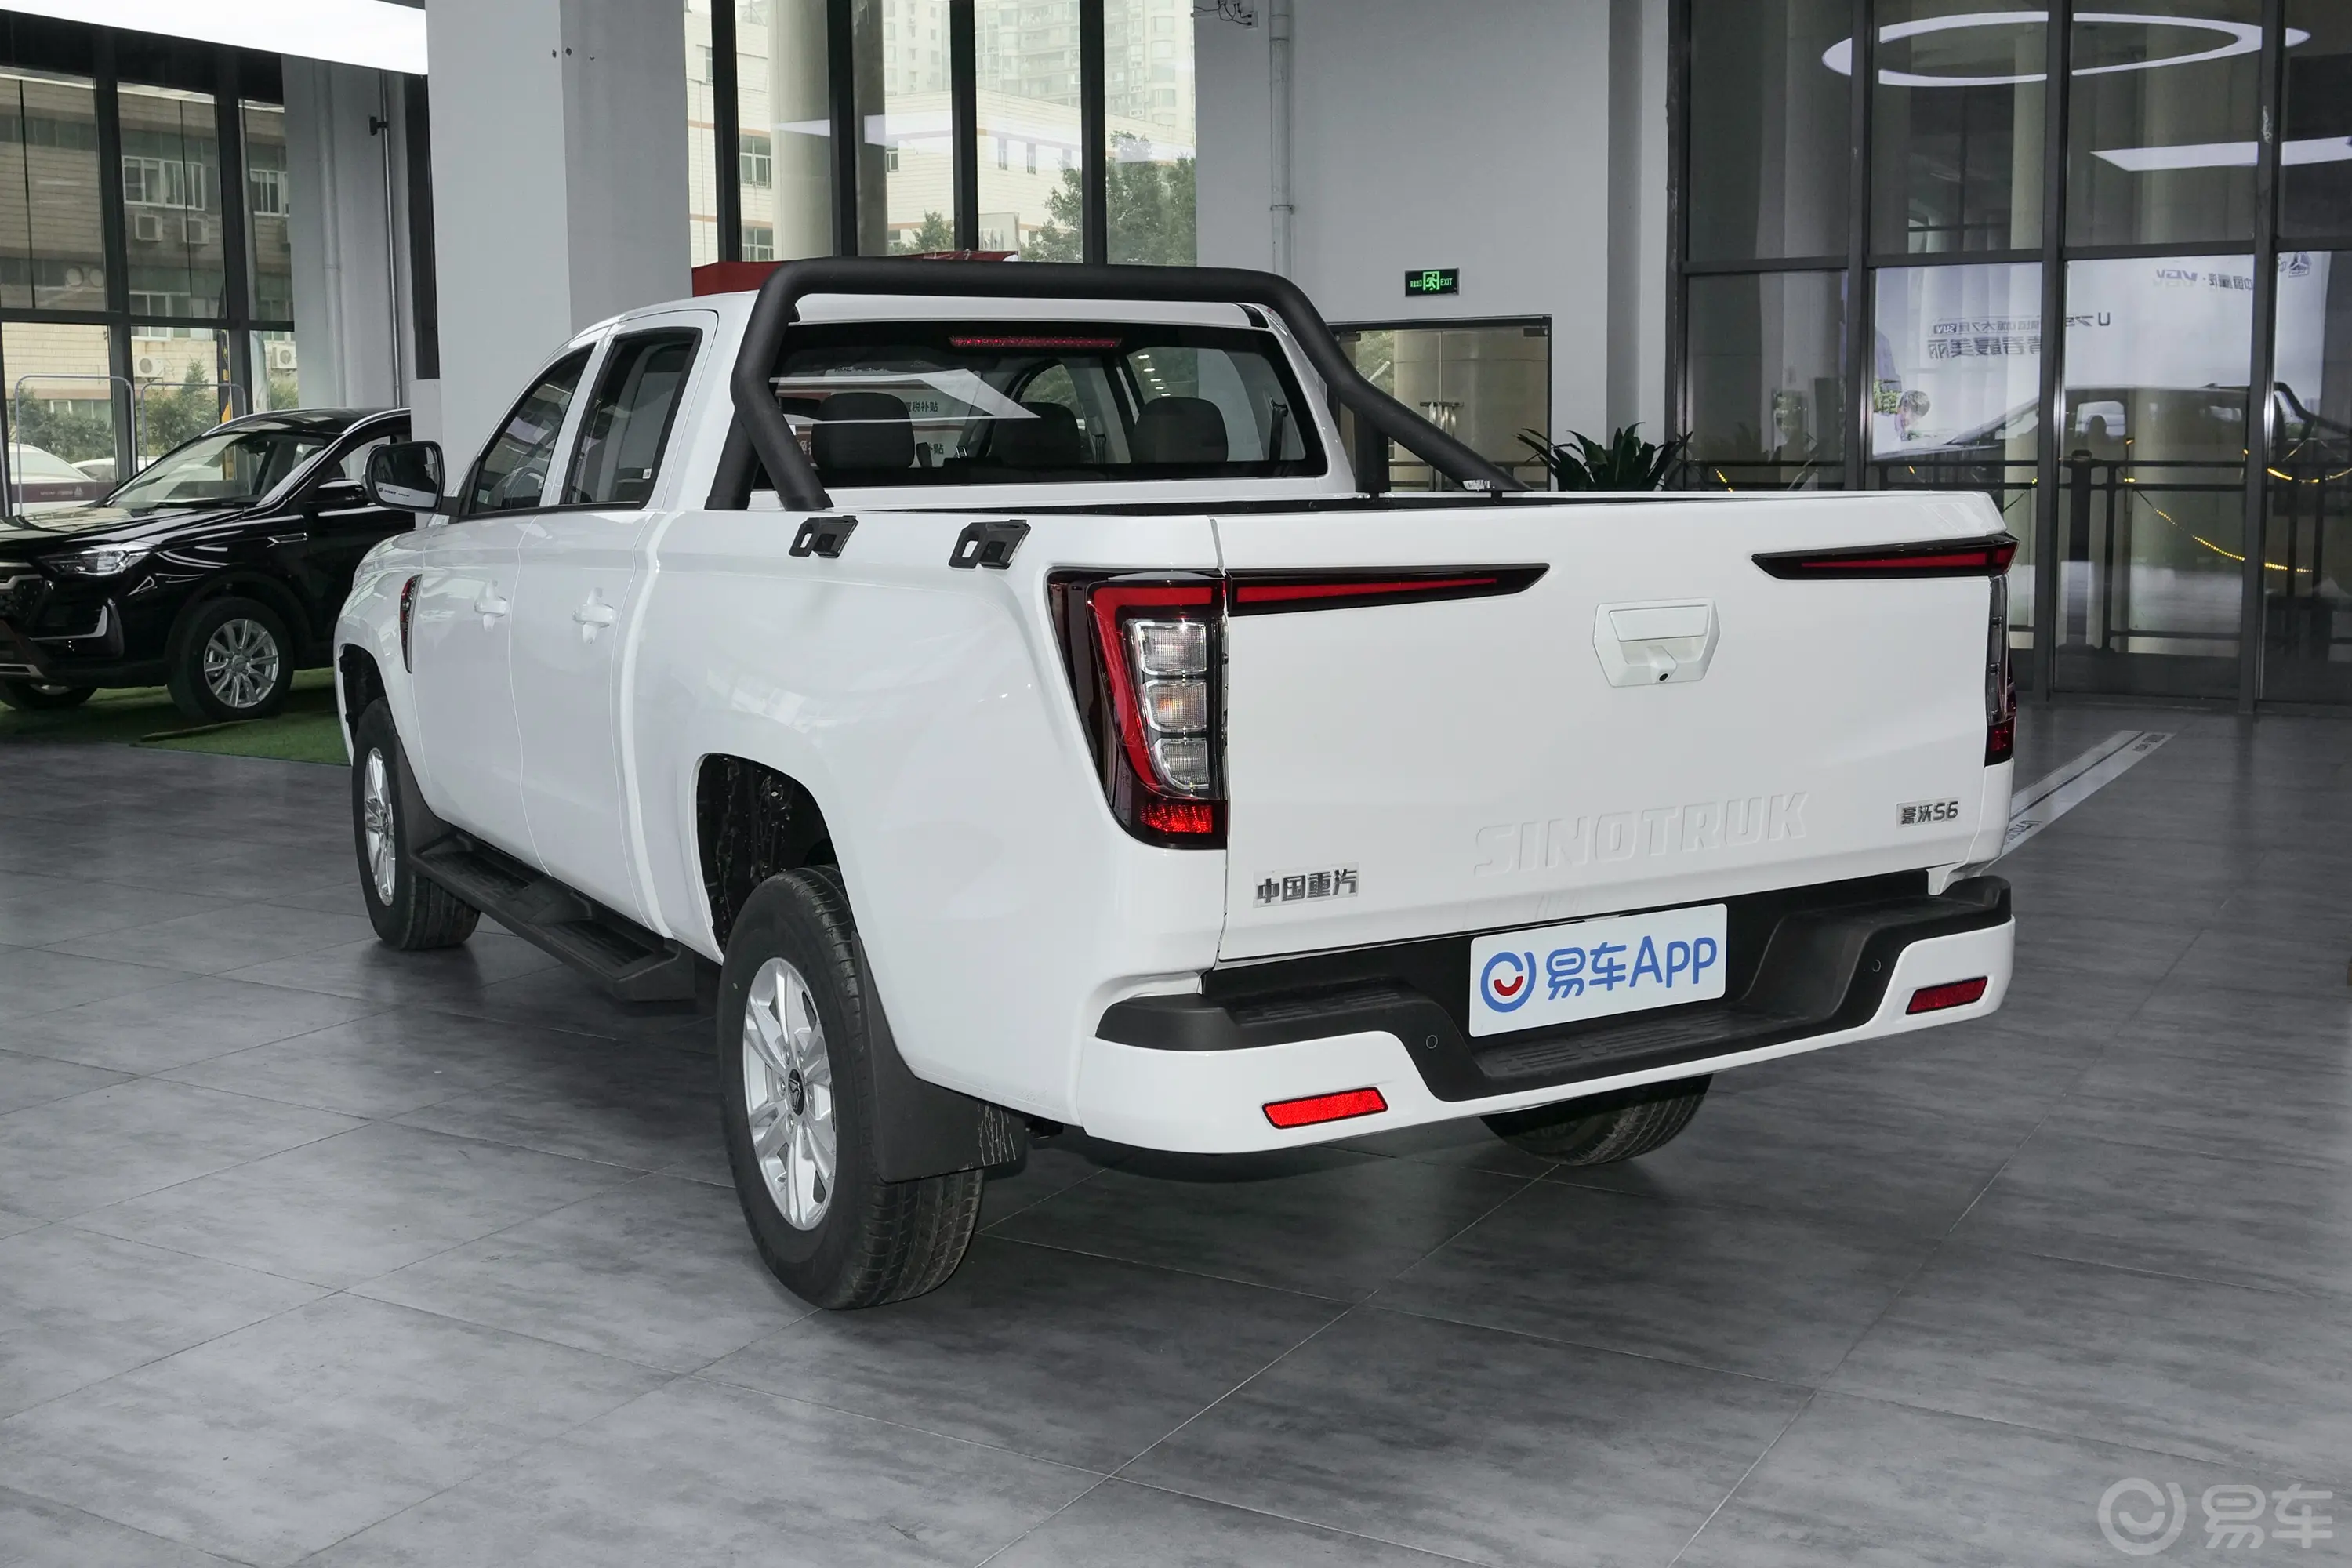 中国重汽皮卡商用 2.0T 自动两驱长轴青春版 柴油侧后45度车头向左水平